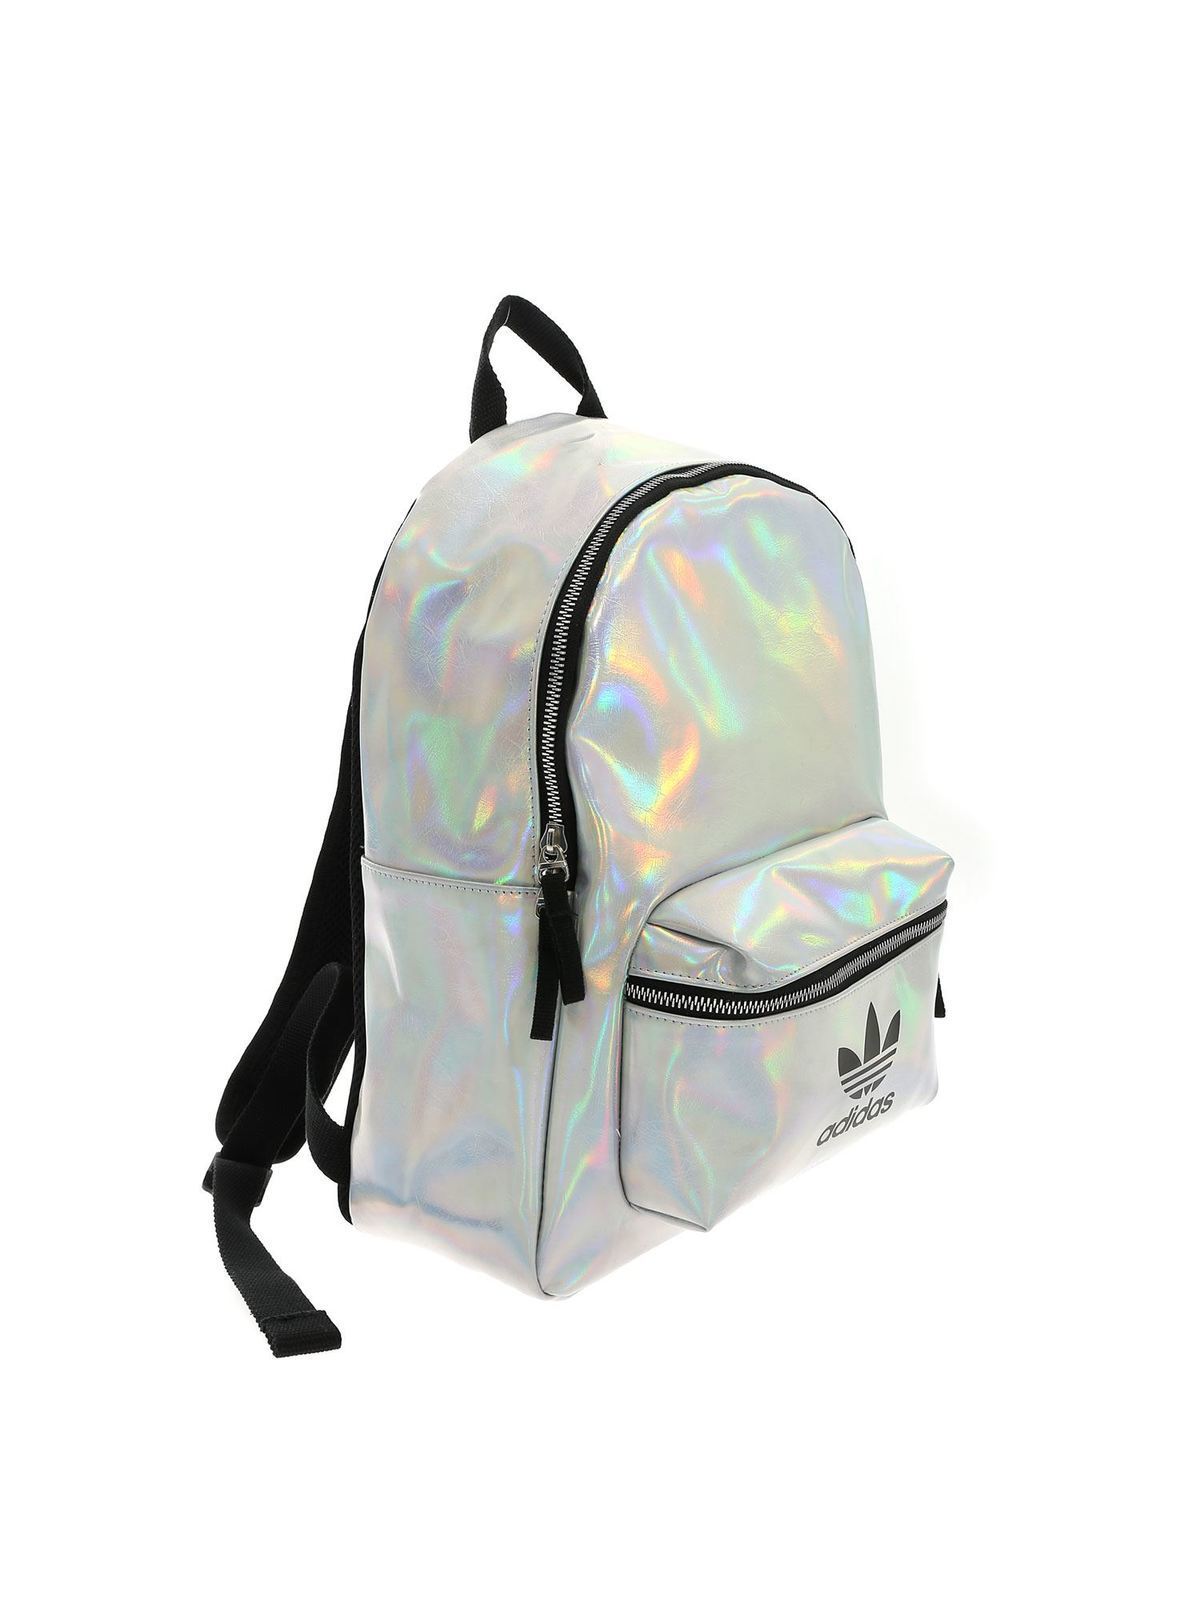 adidas classic metallic backpack